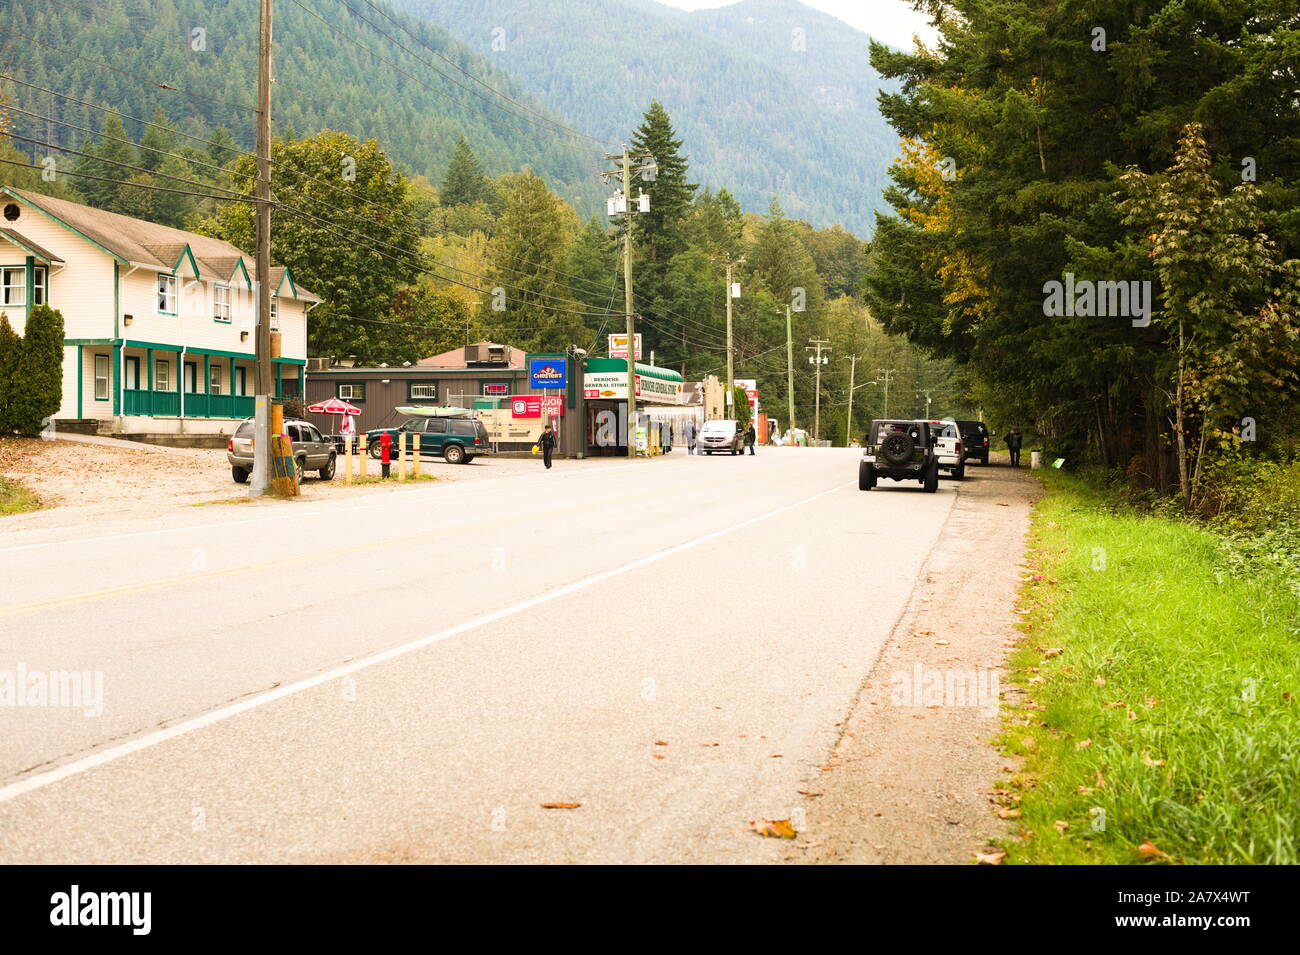 A small town landscape in Deroche, British Columbia, Canada Stock Photo